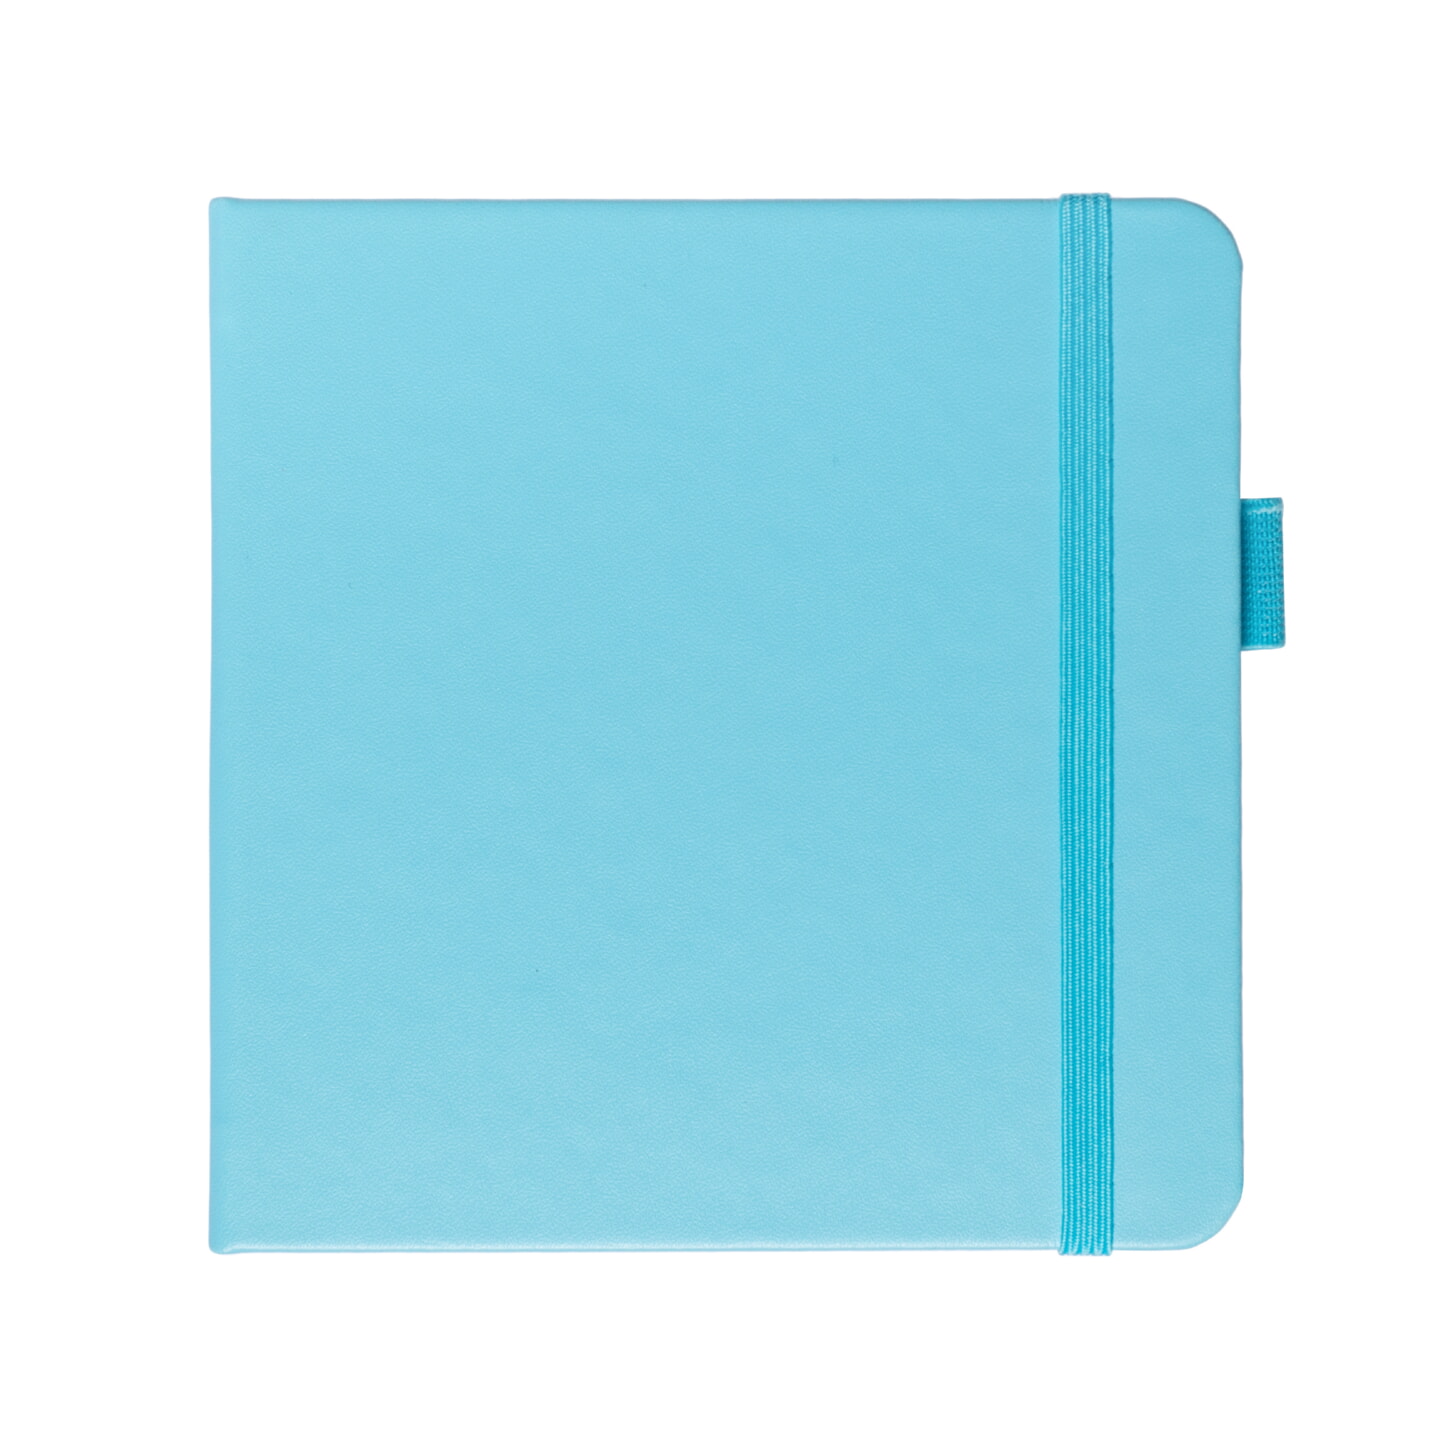 Блокнот для зарисовок Sketchmarker 140г/кв.м 12*12см 80л твердая обложка Небесно-голубой